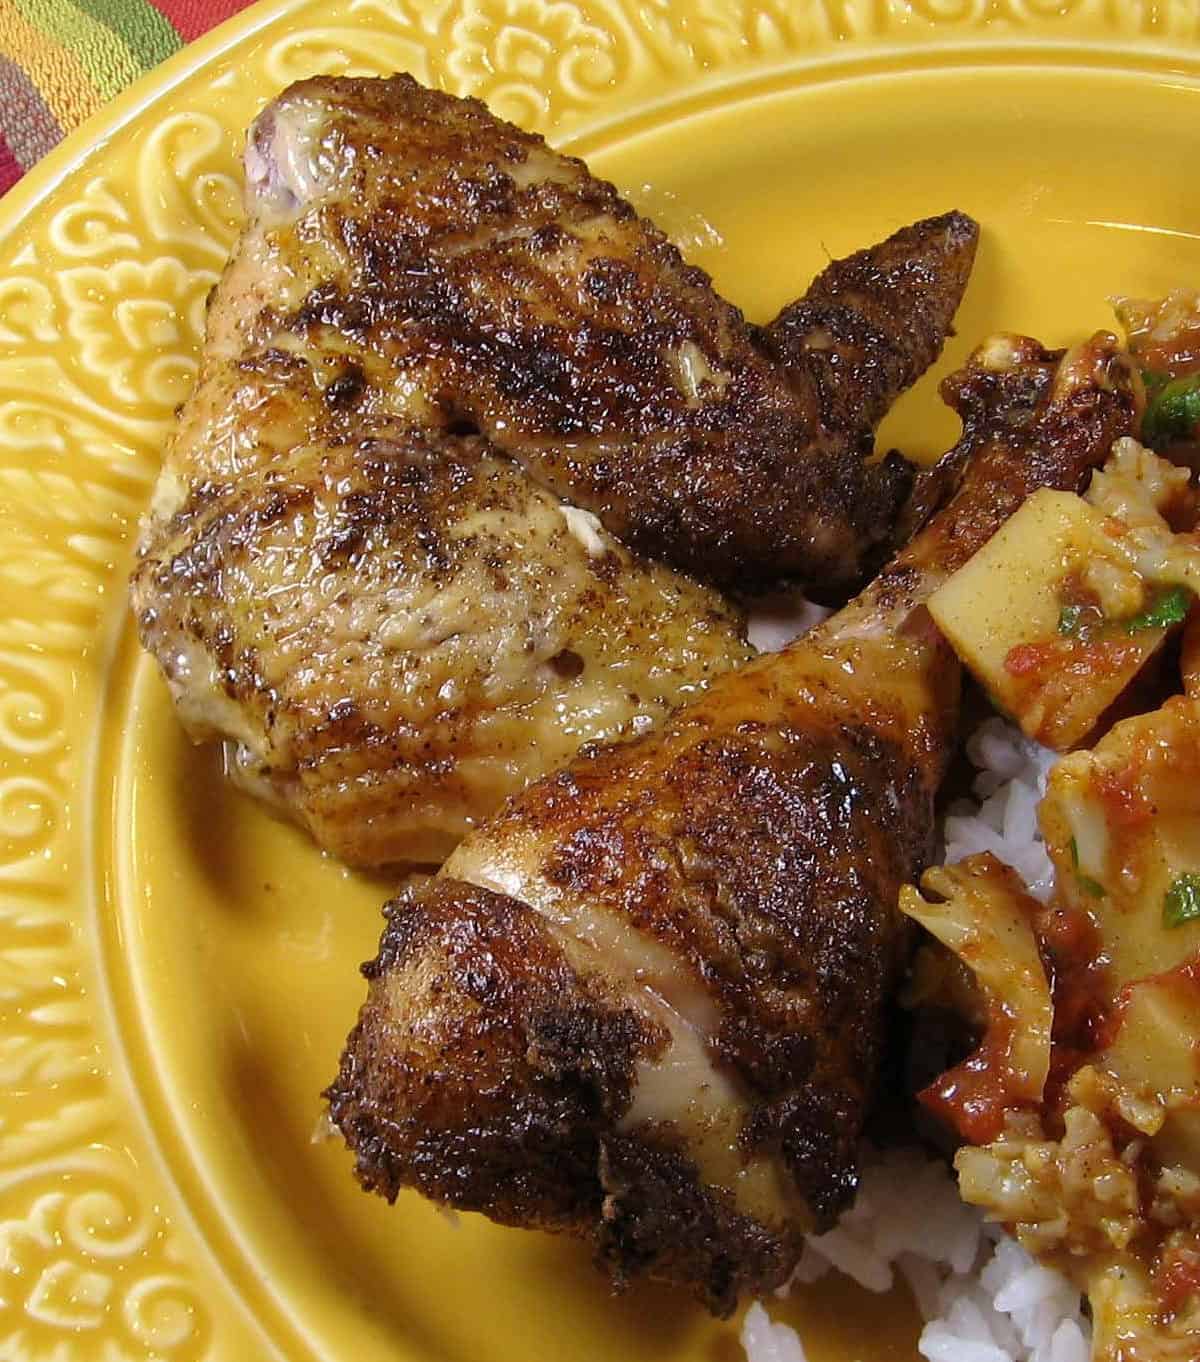 Taste of India Rotisserie Chicken